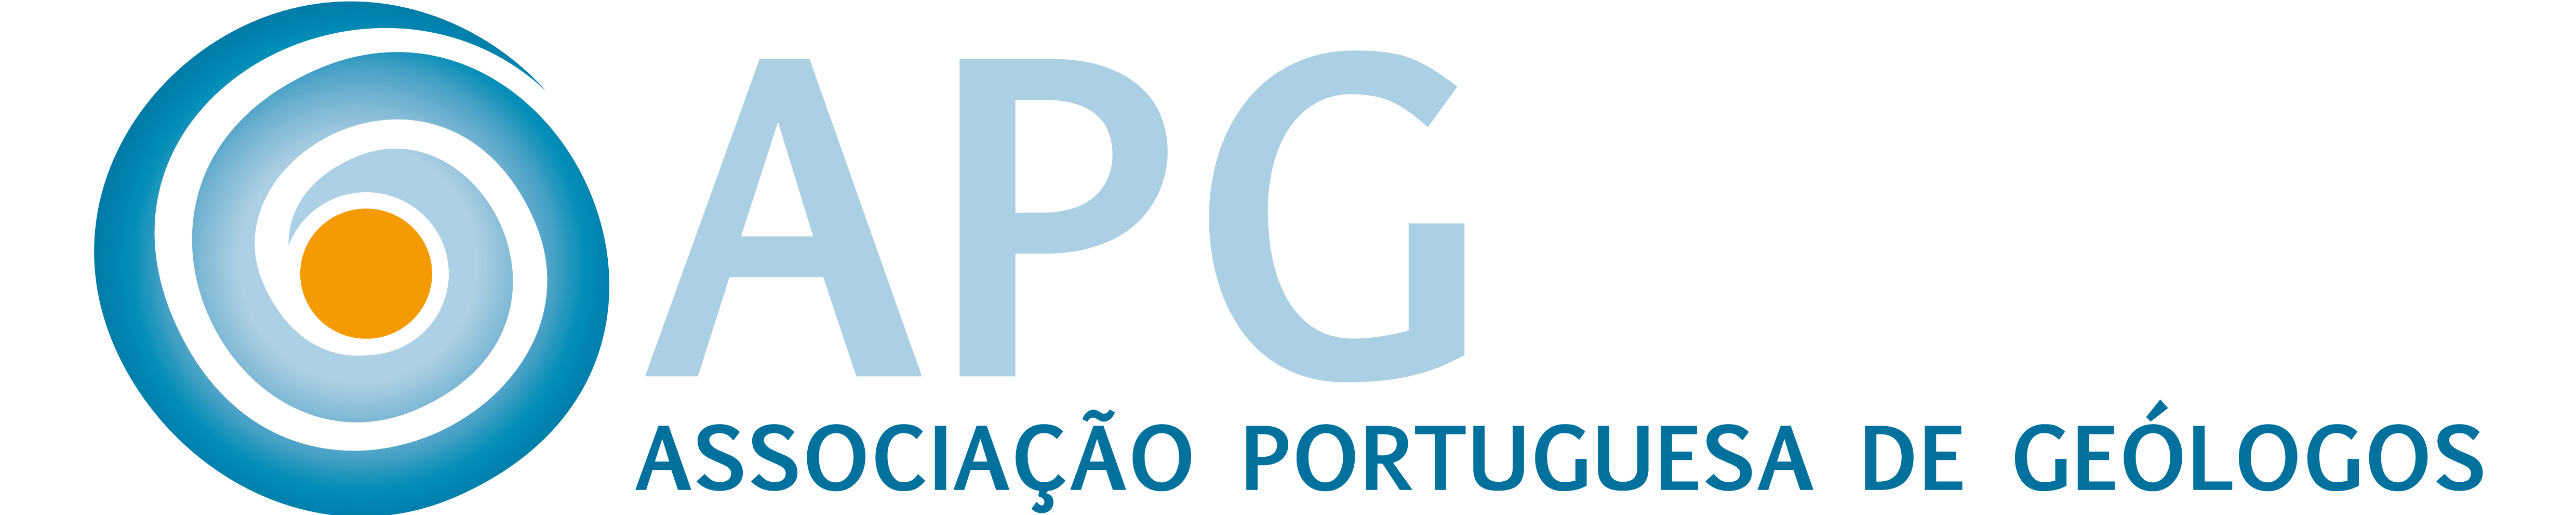 Associação Portuguesa de Geólogos